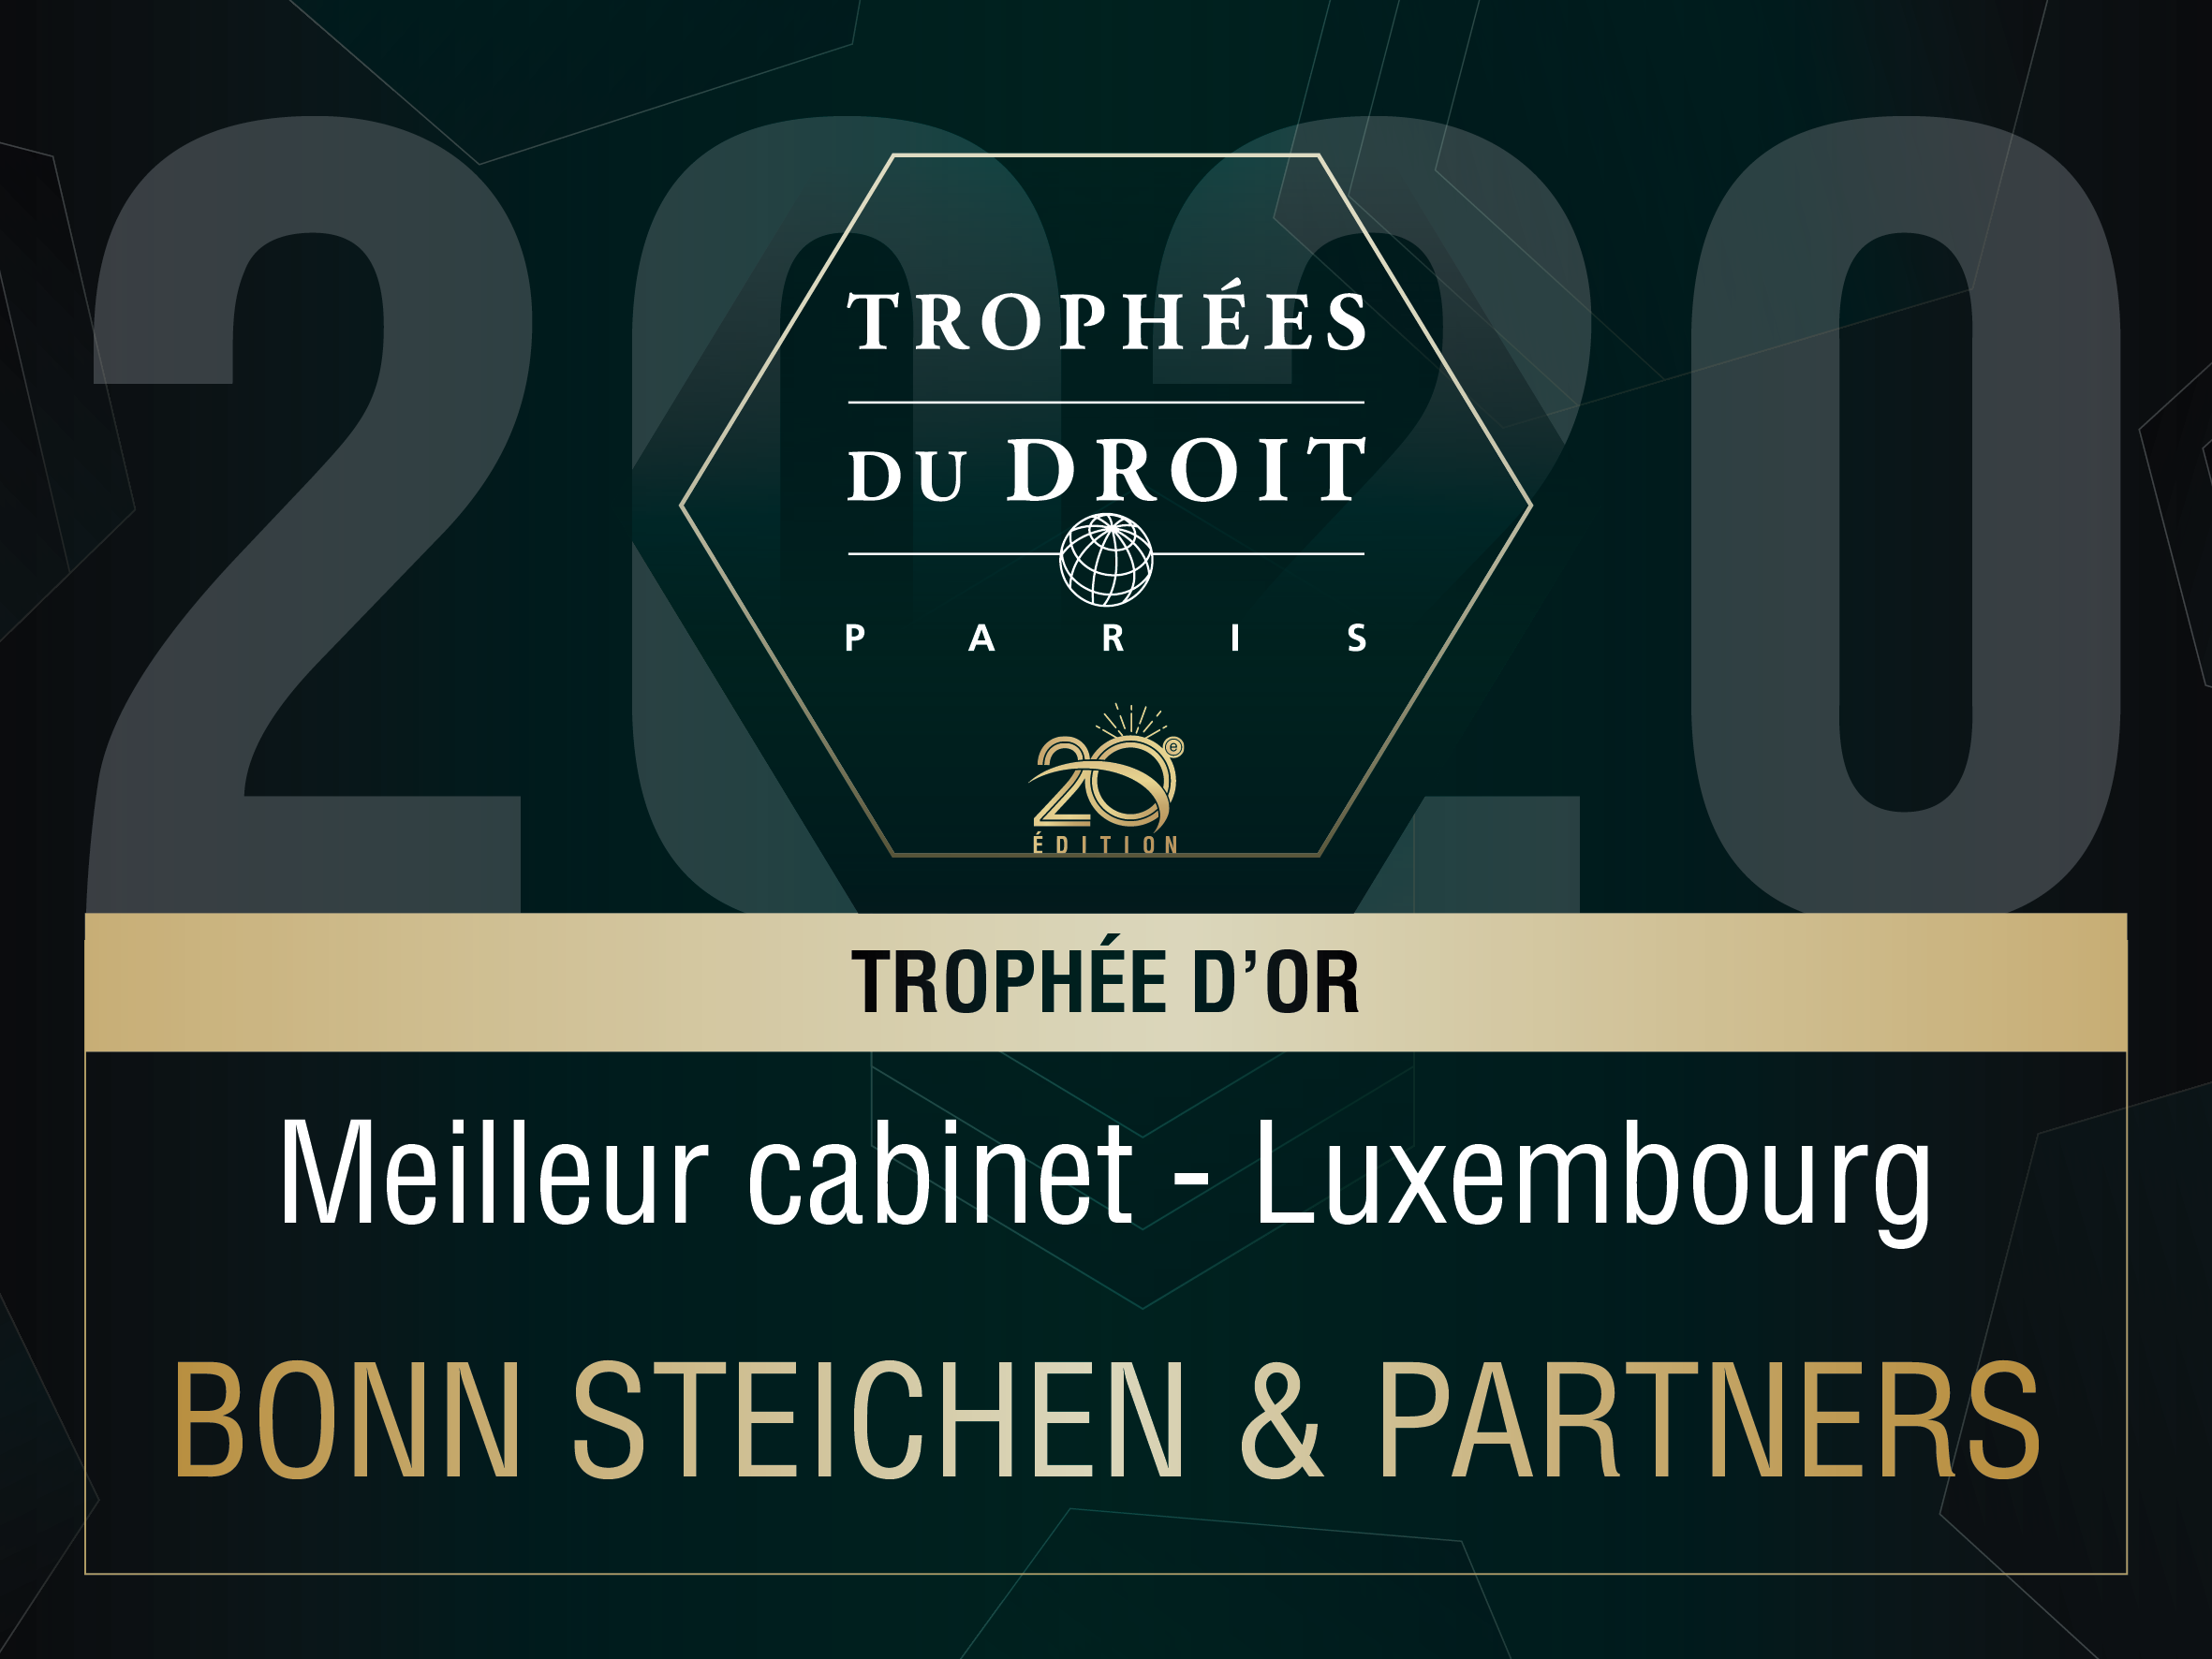 Trophée du Droit - Best Luxembourg Law Firm